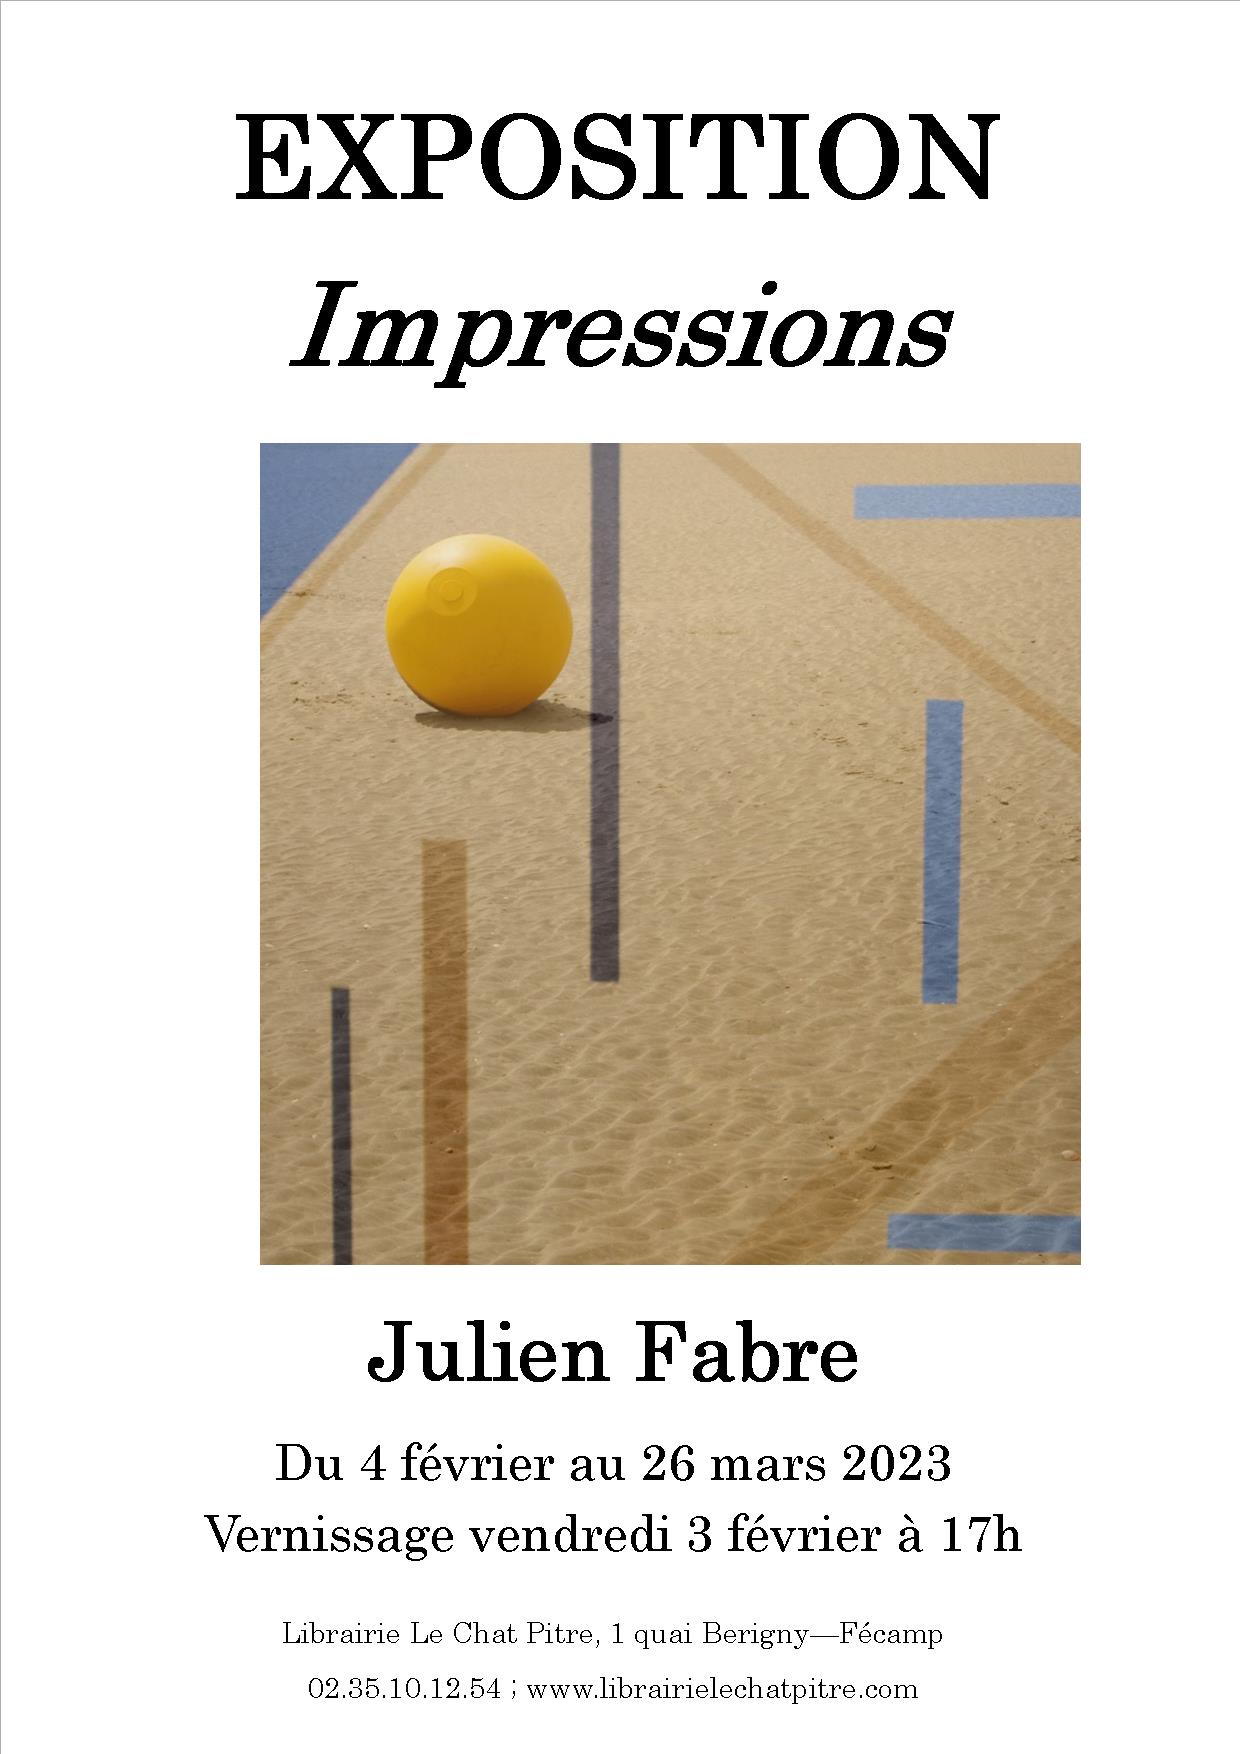 Exposition de Julien Fabre - Impressions